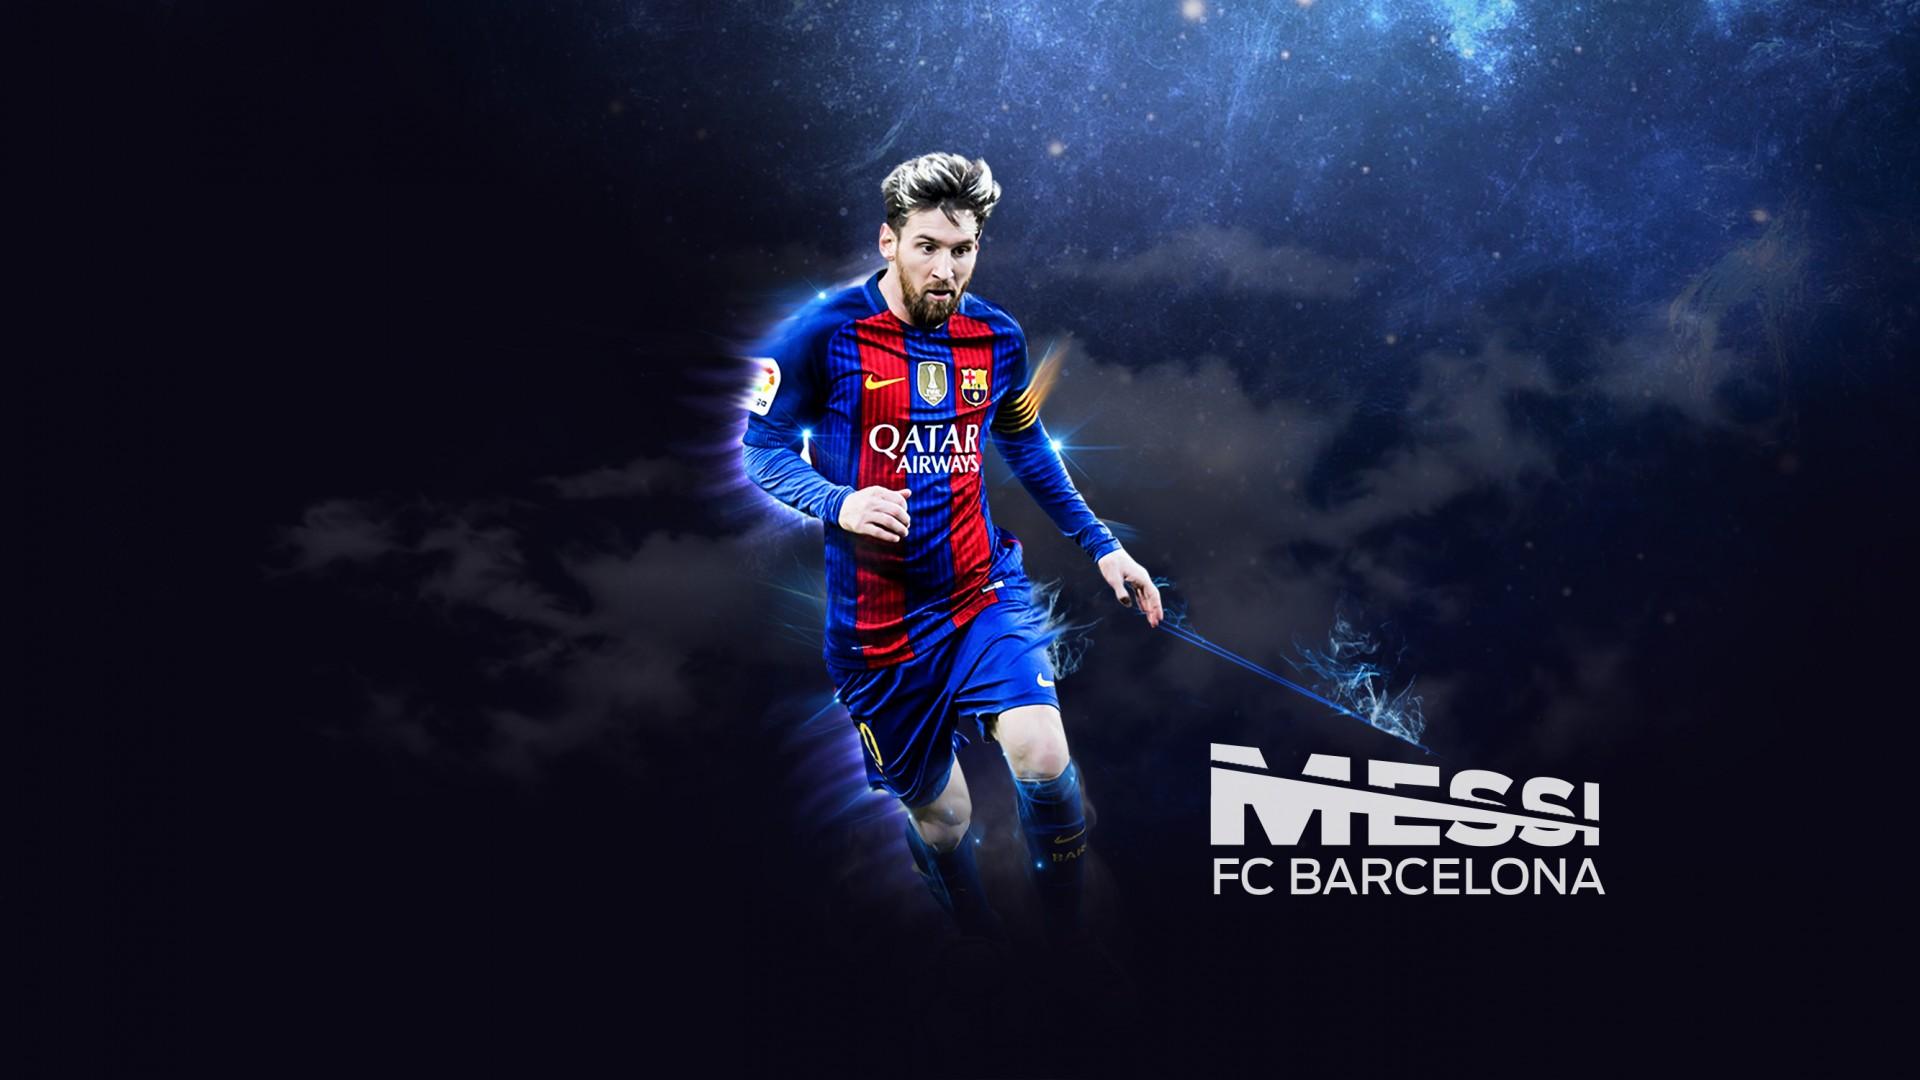 Những hình nền máy tính Messi đầy sắc màu đem đến cho bạn sự bùng nổ và sức sống. Chúng tôi đã chọn lựa những bức ảnh đẹp nhất, thể hiện tài năng và phẩm chất tuyệt vời của Messi. Hãy thưởng thức những hình nền tuyệt đẹp này và khám phá thế giới của thể thao và đam mê cùng Messi!